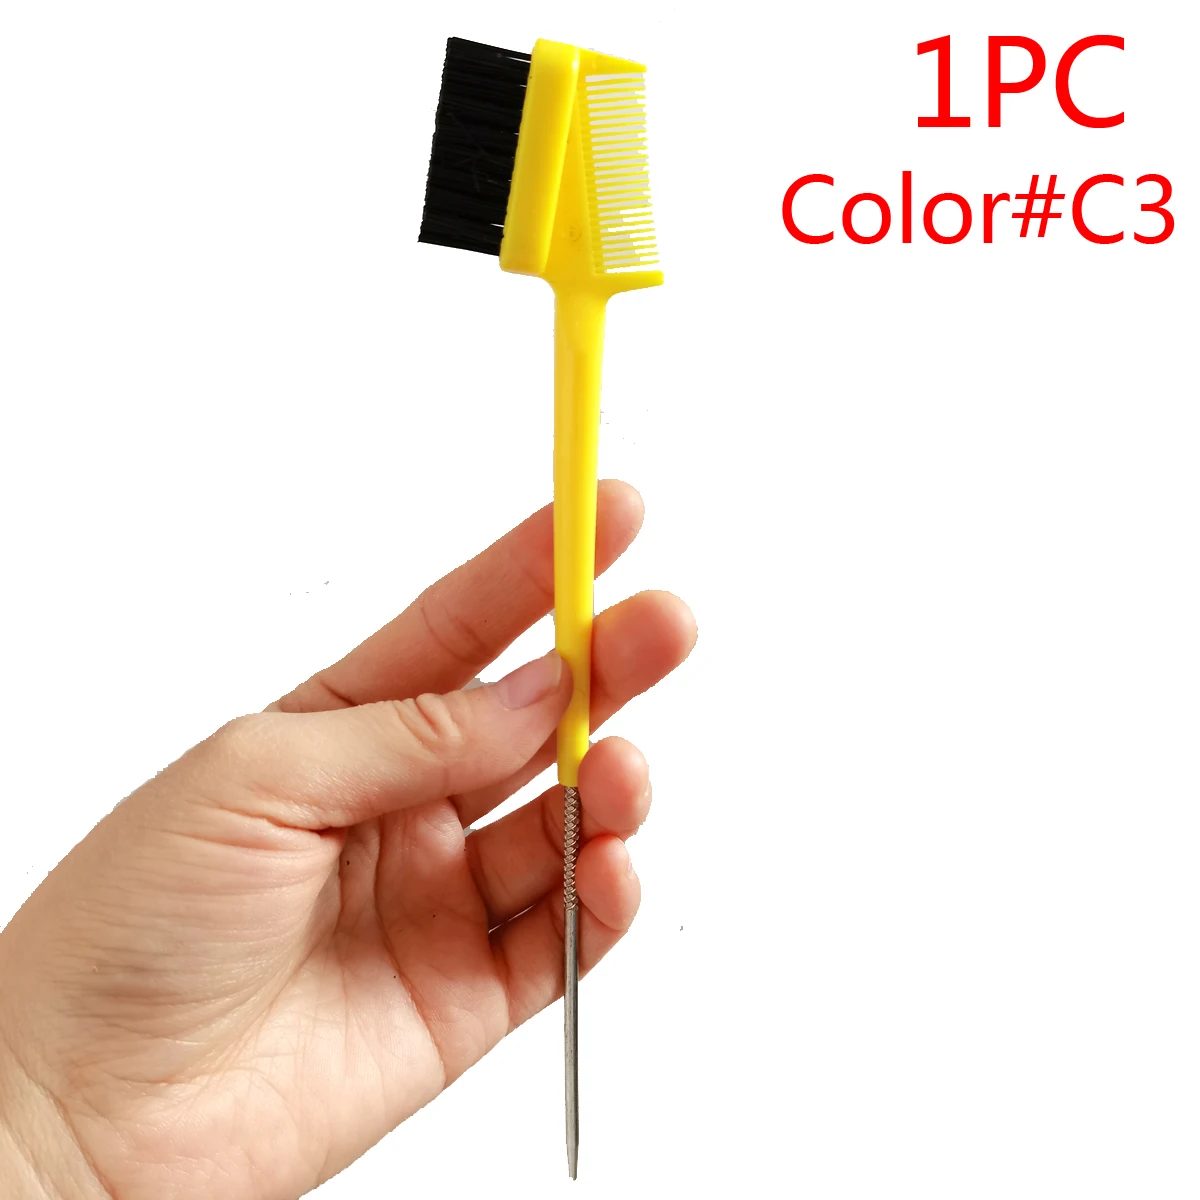 1PC ColorC3